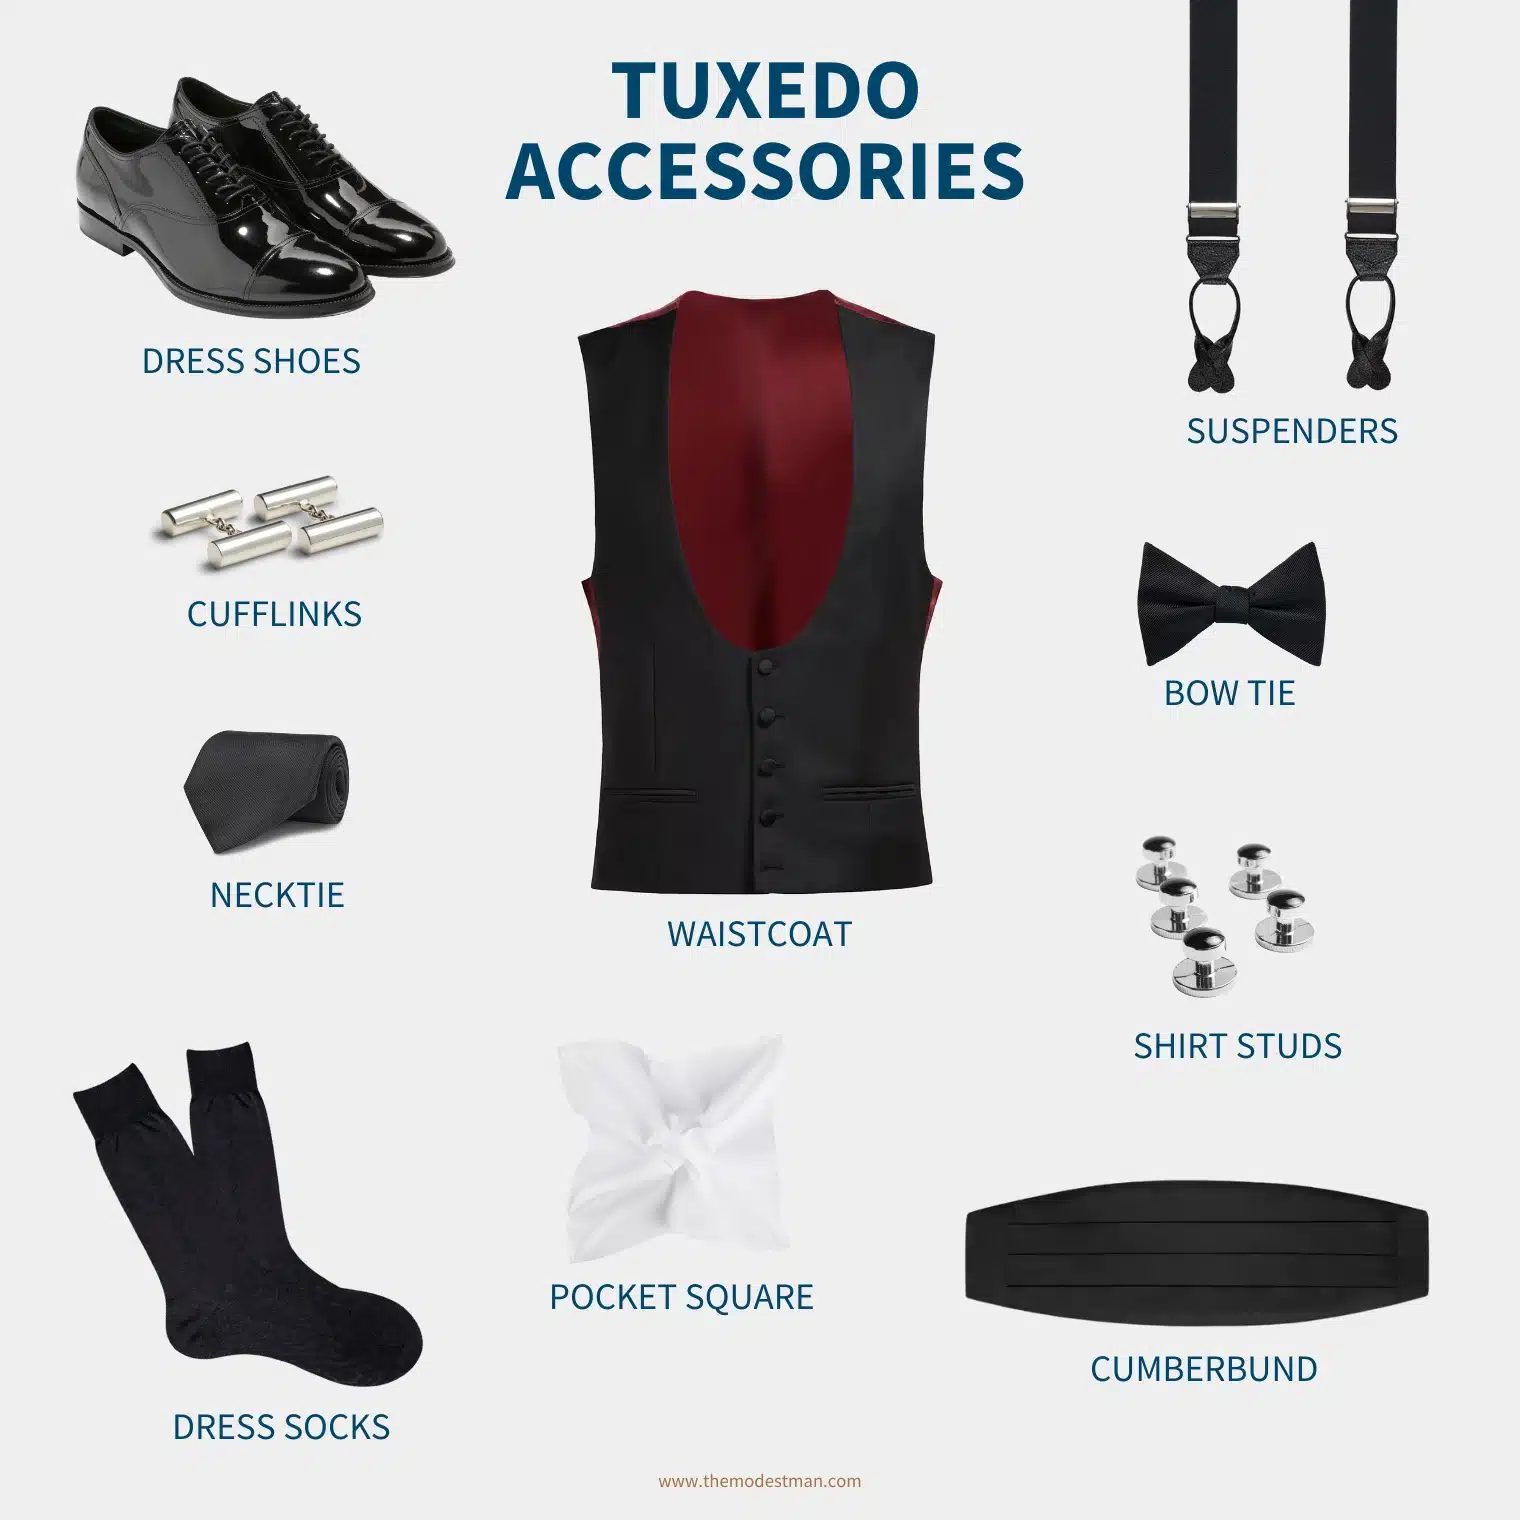 Tuxedo accessories